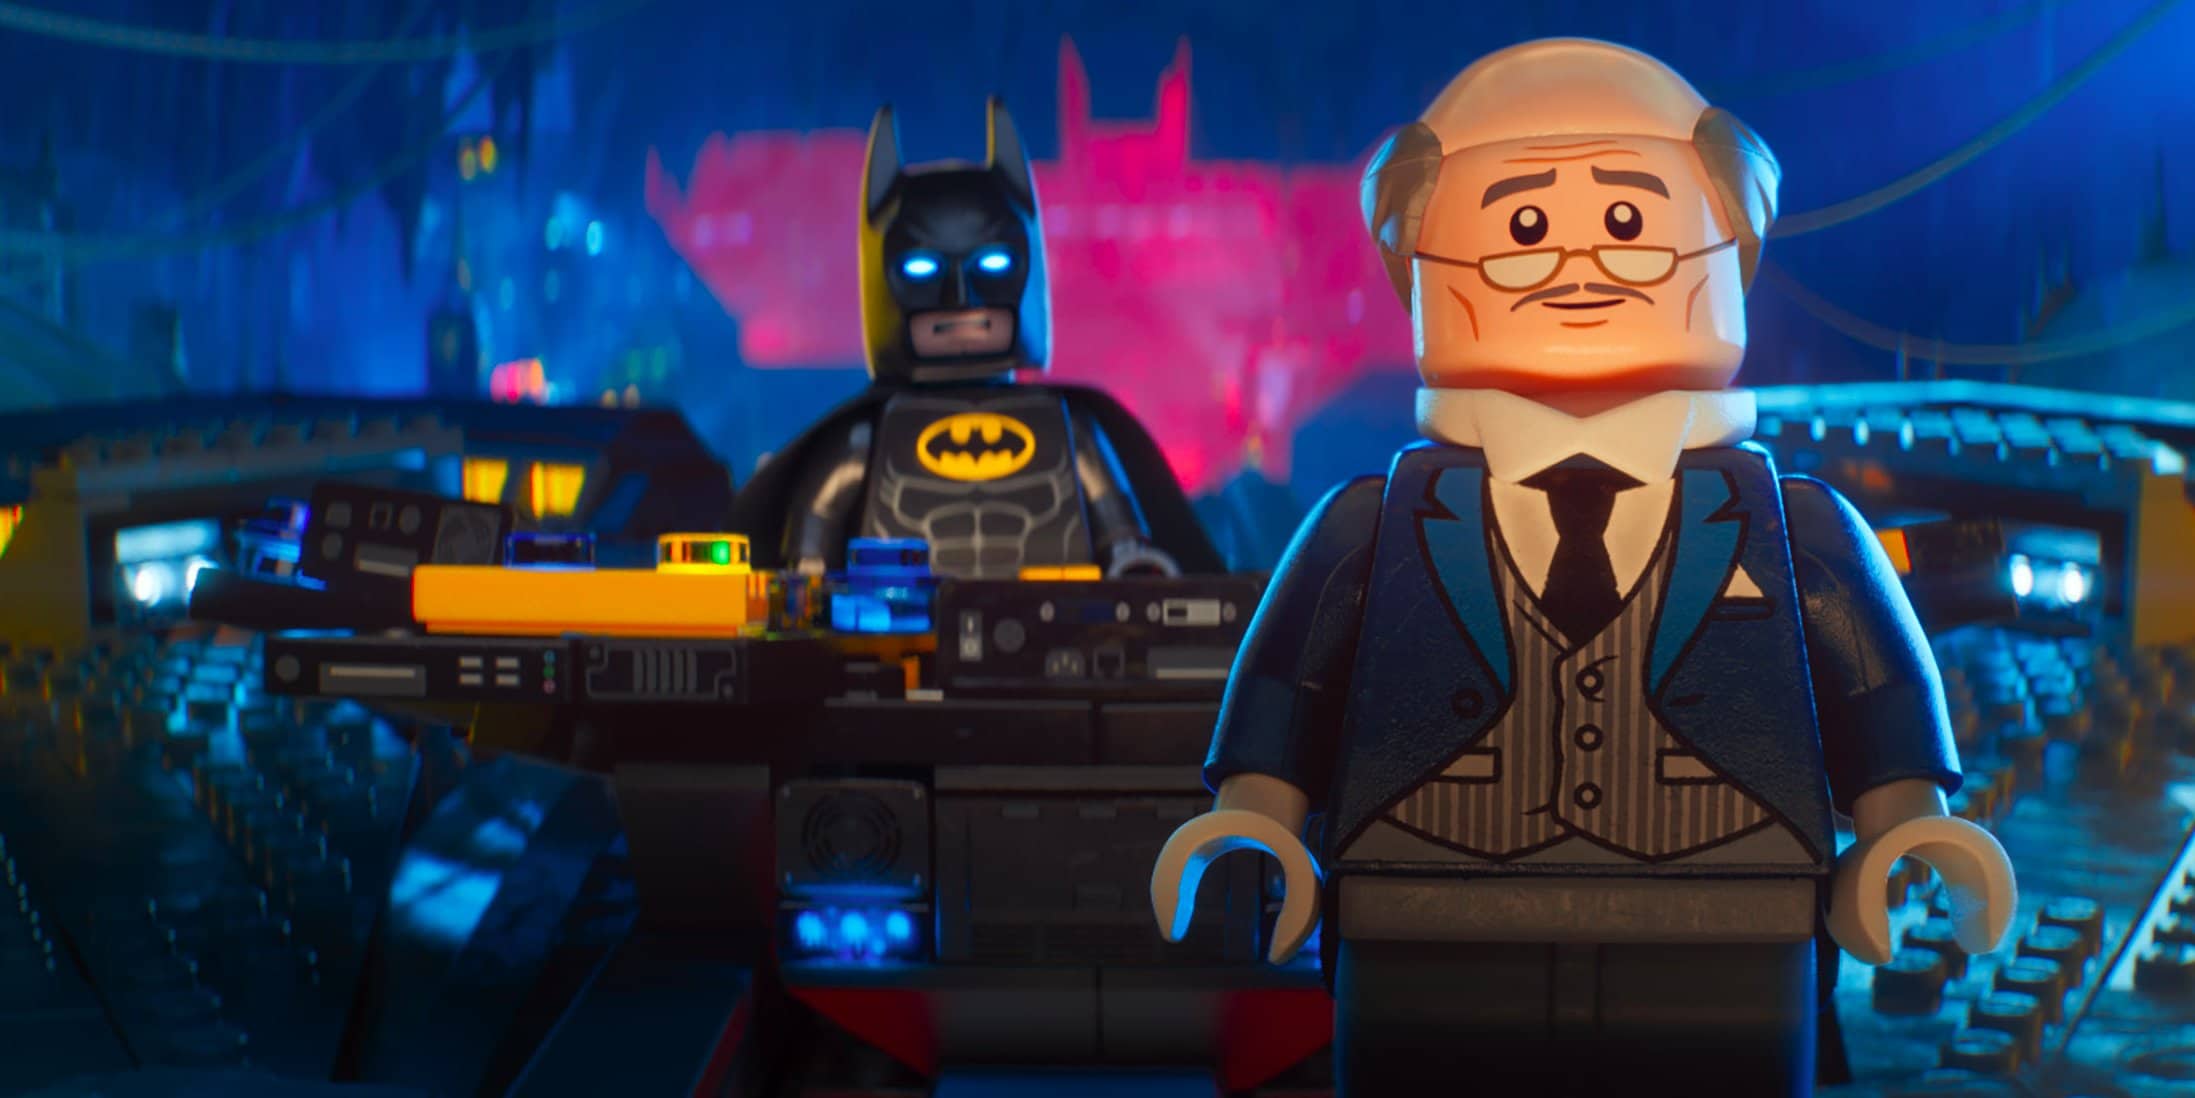 Lego Batman and Alfred